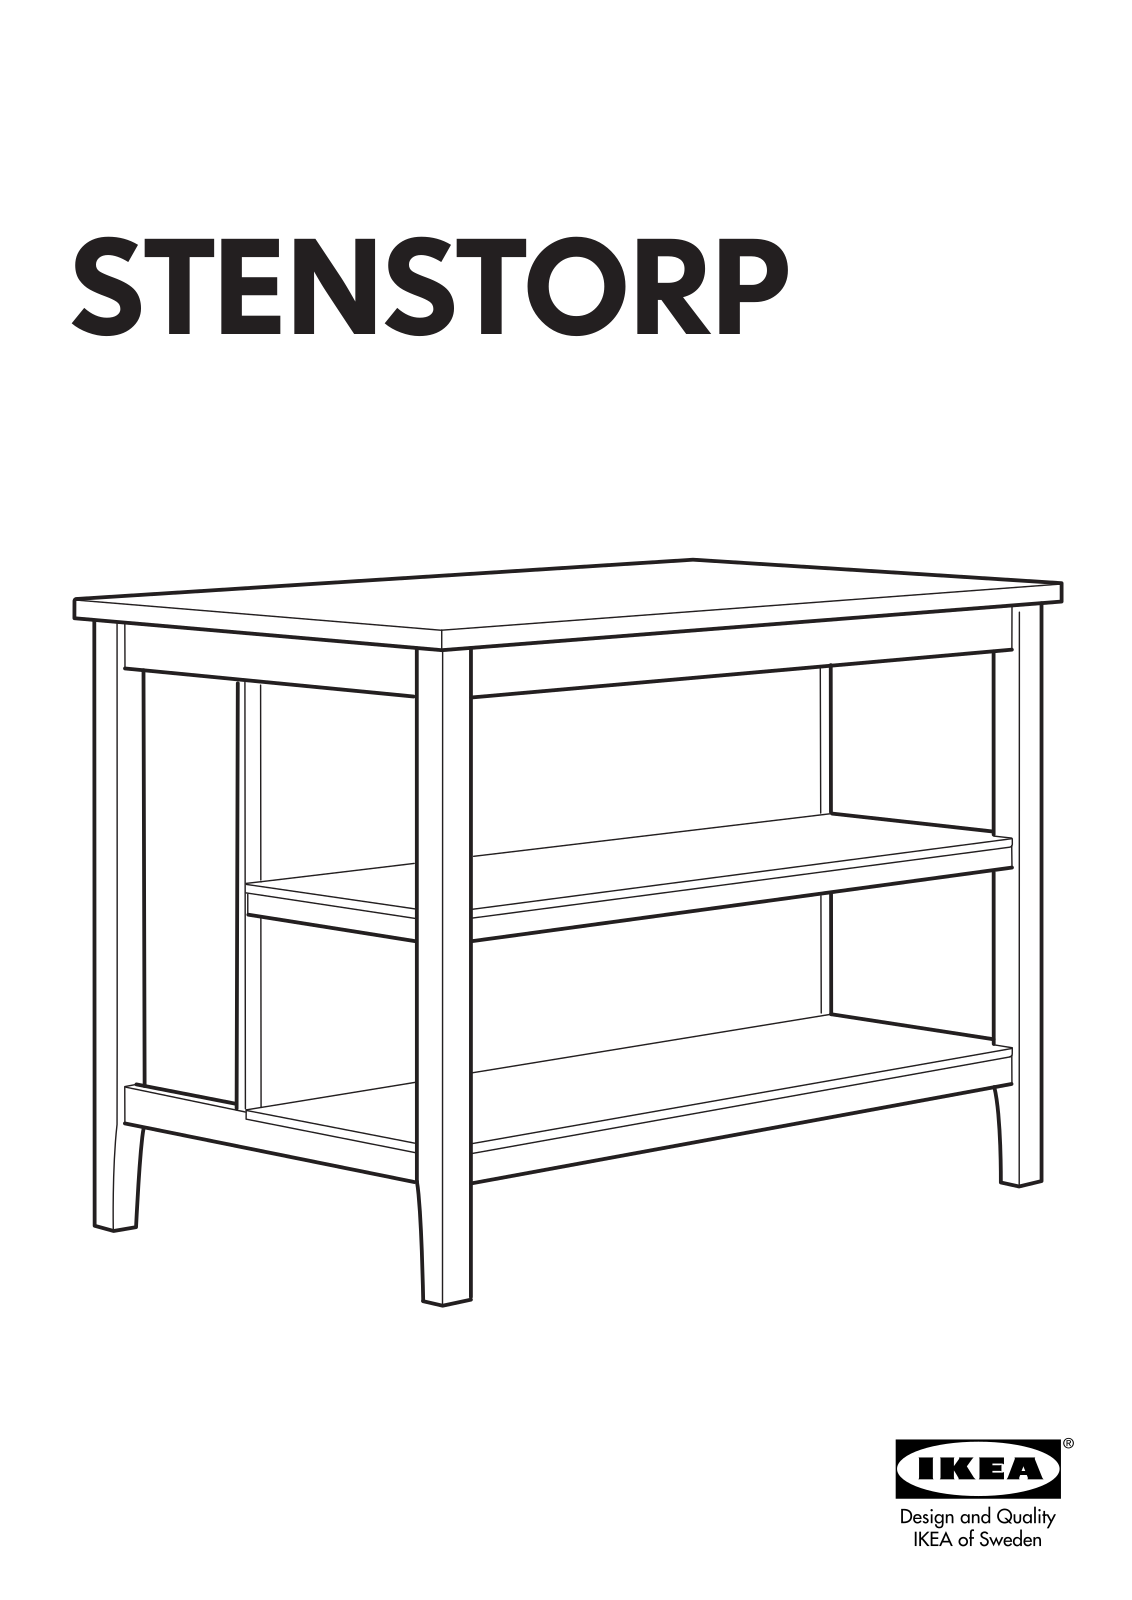 IKEA STENSTORP KITCHEN ISLAND 50X31 Assembly Instruction